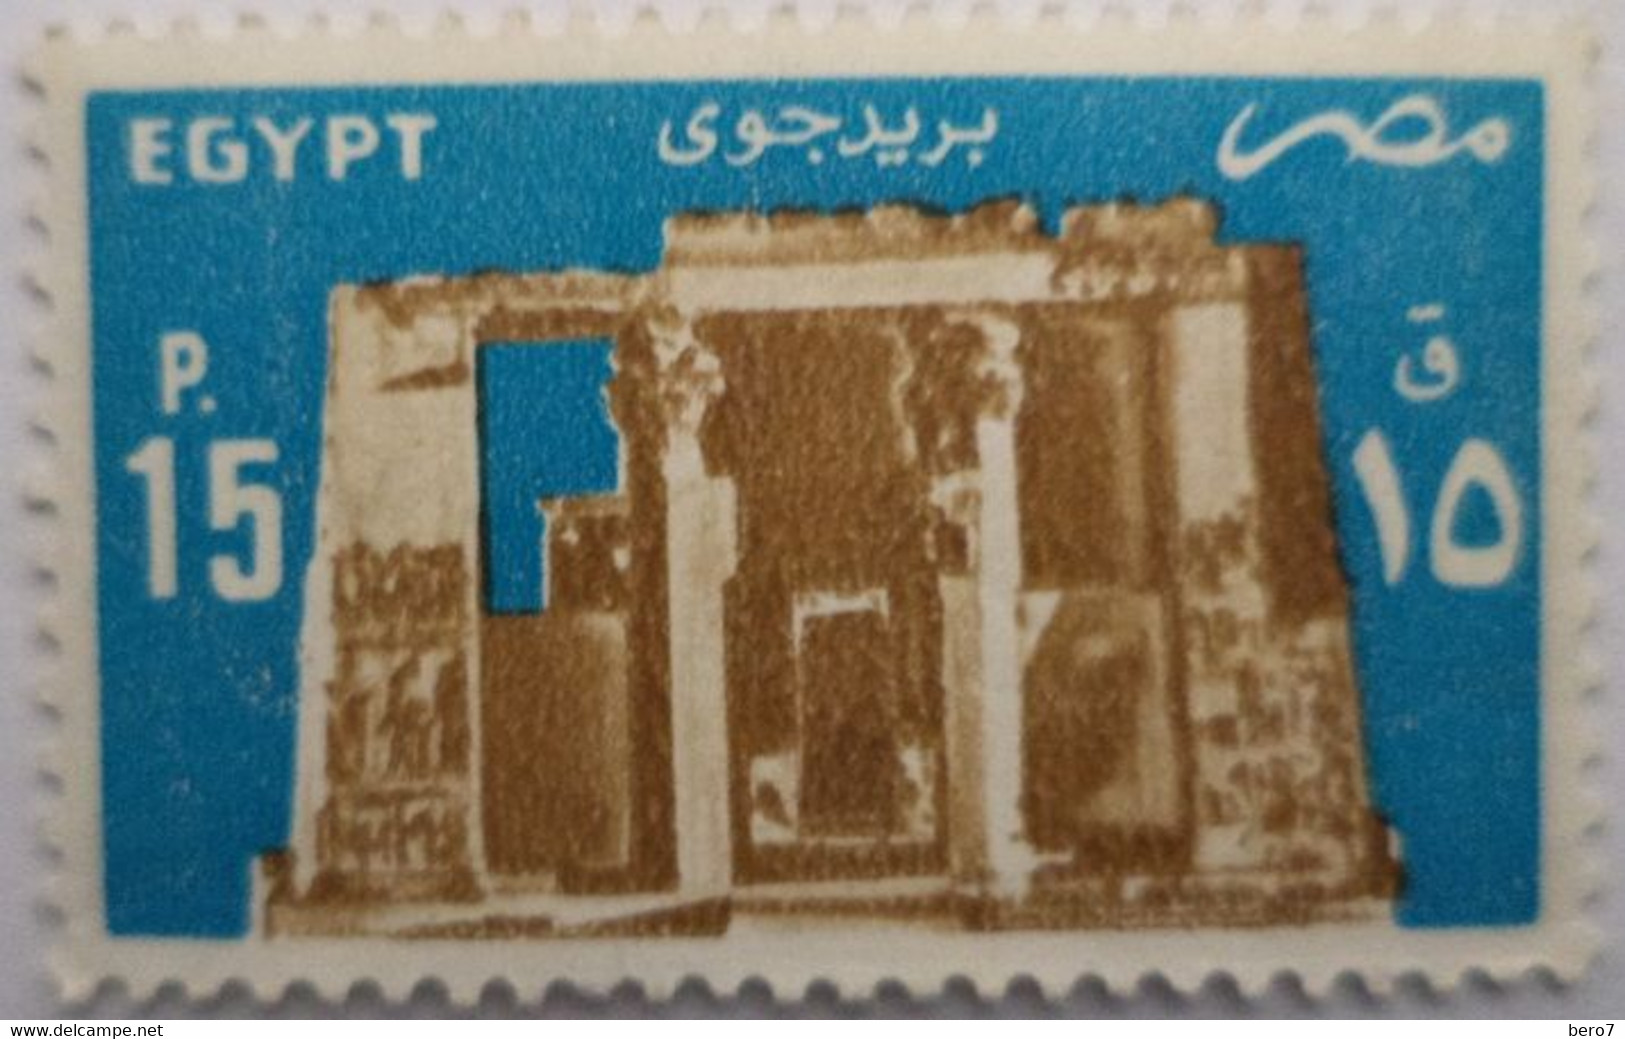 EGYPT- 1985 - Temple Of Horus, Edfu [MNH] (Egypte) (Egitto) (Ägypten) - Oblitérés